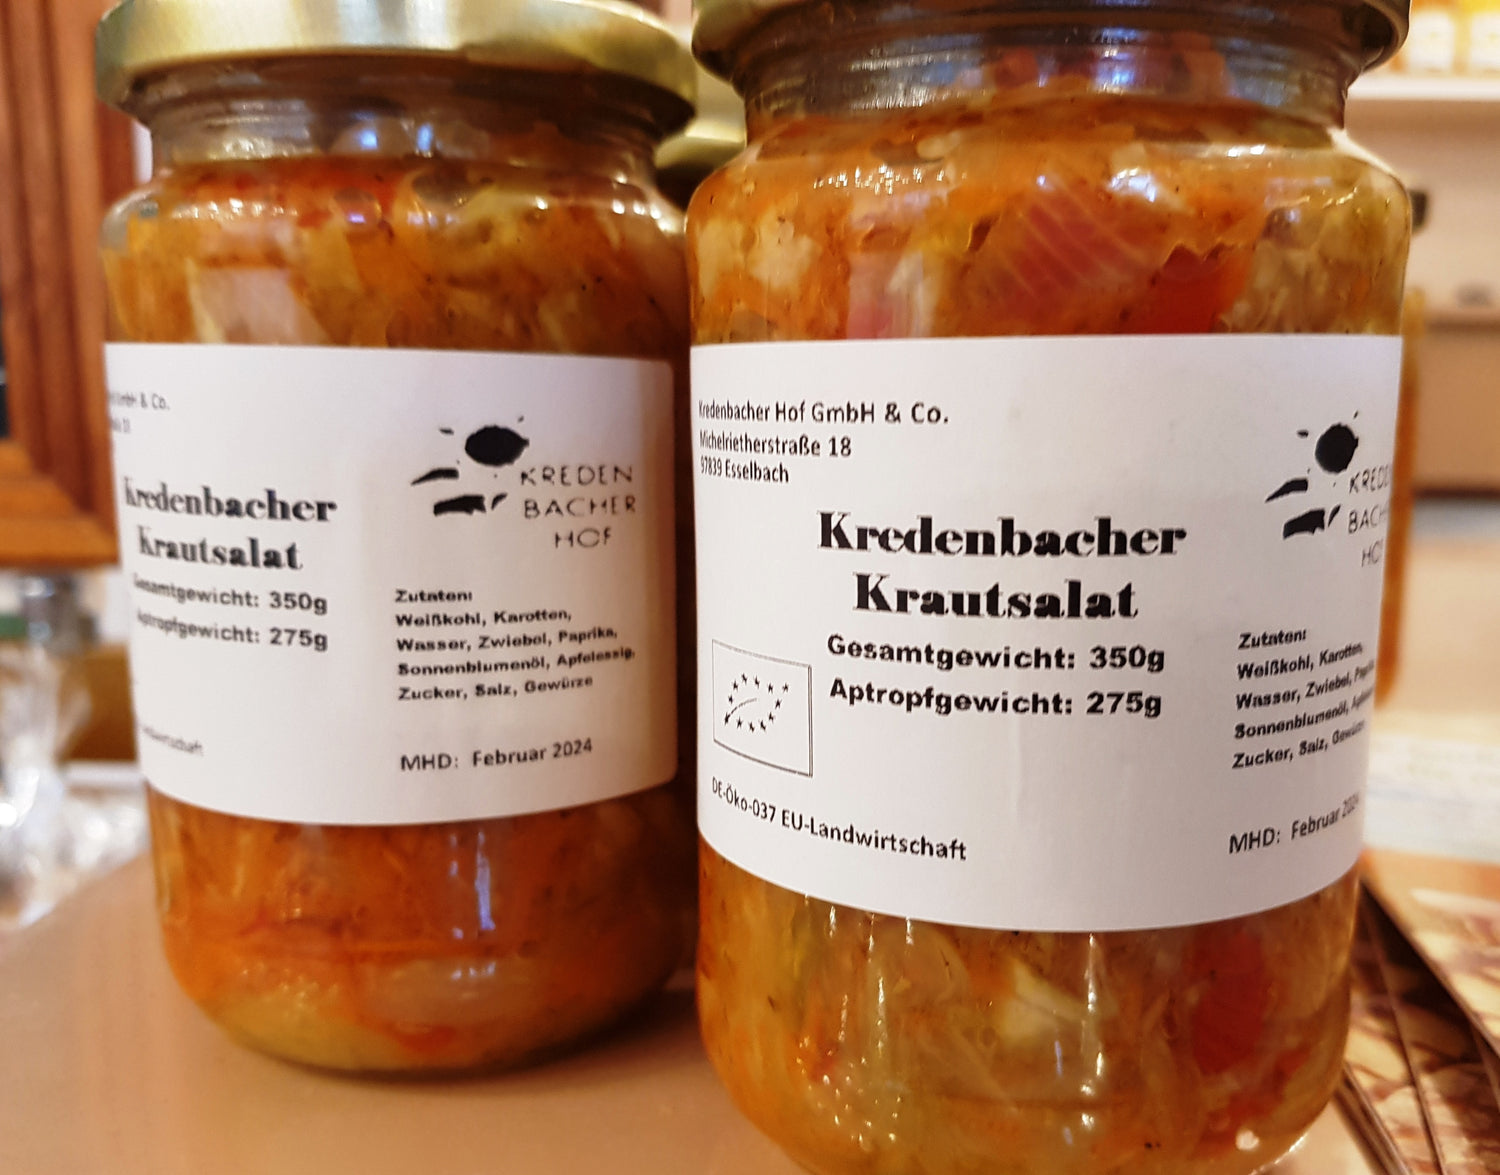 Kredenbacher Krautsalat